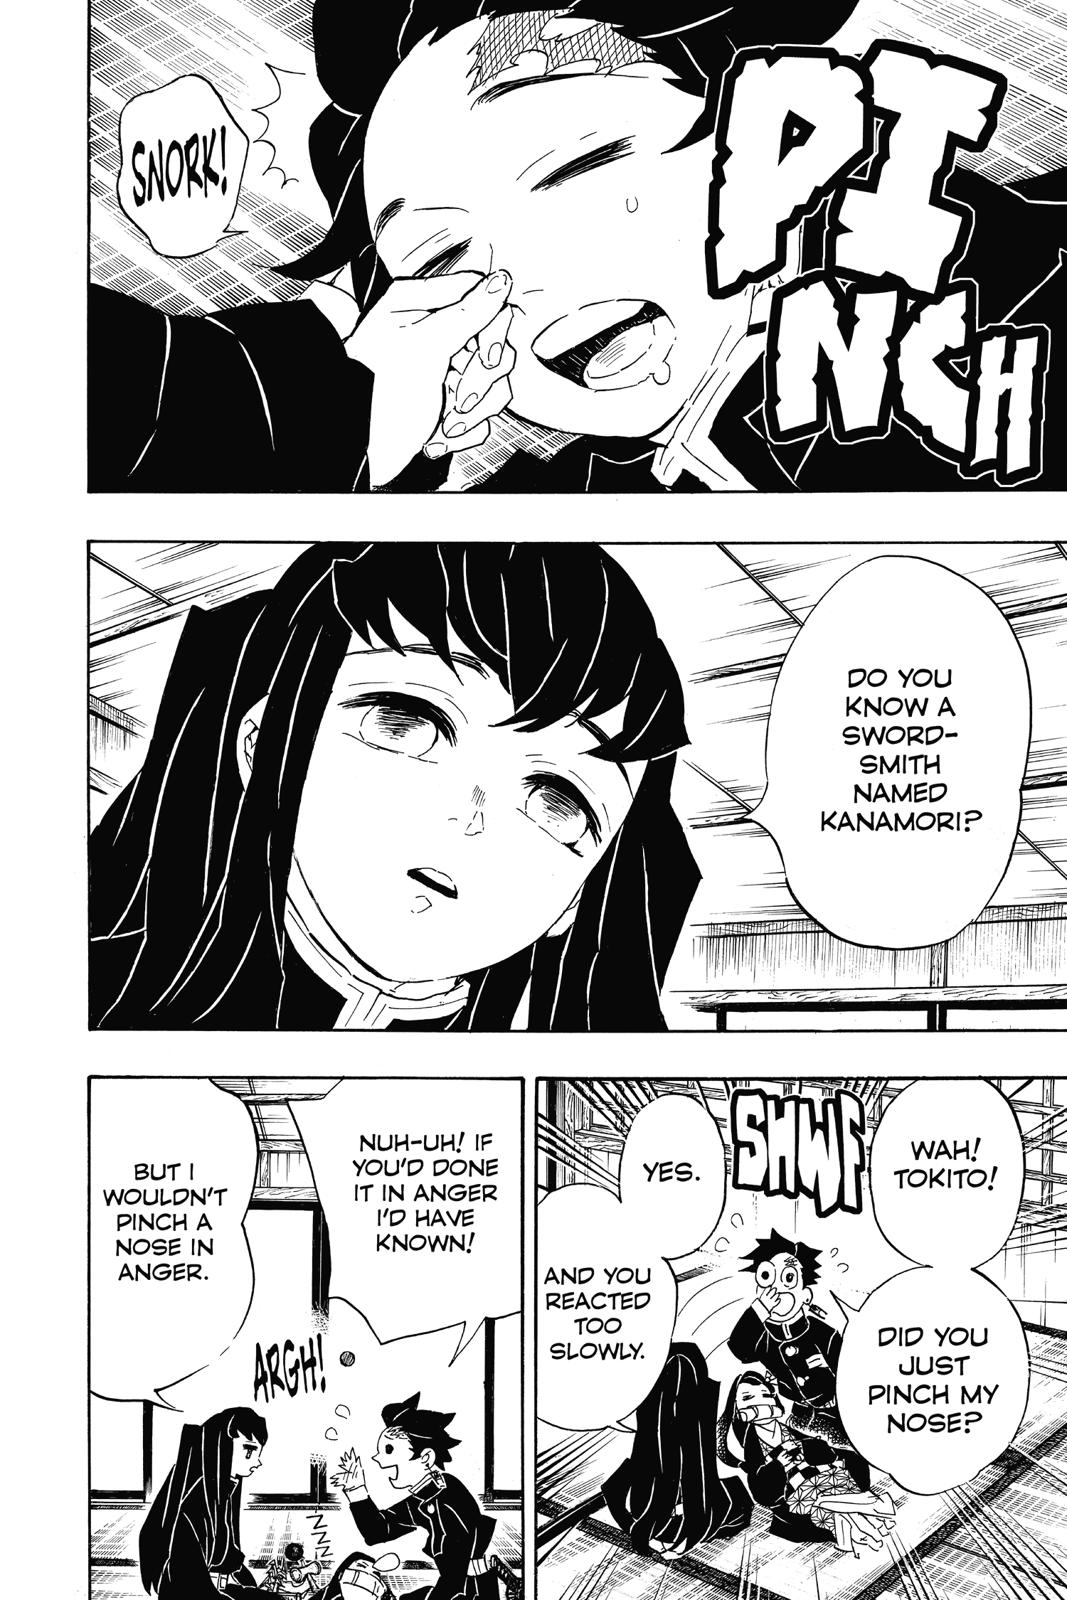 Demon Slayer Manga Manga Chapter - 106 - image 2